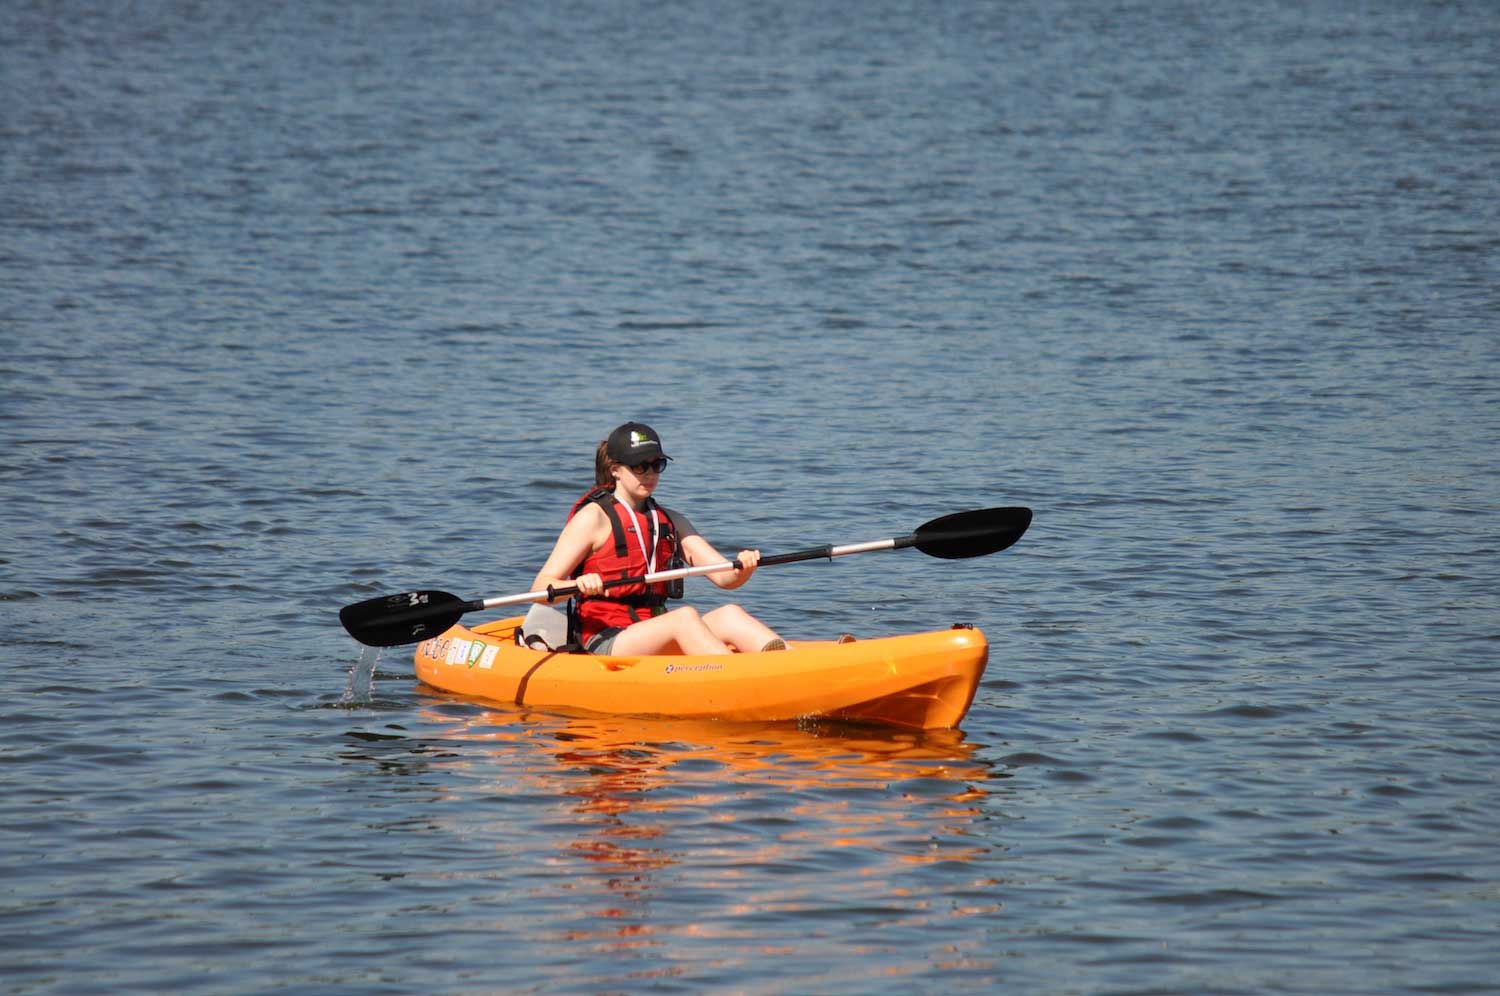 A person kayaking across a lake.